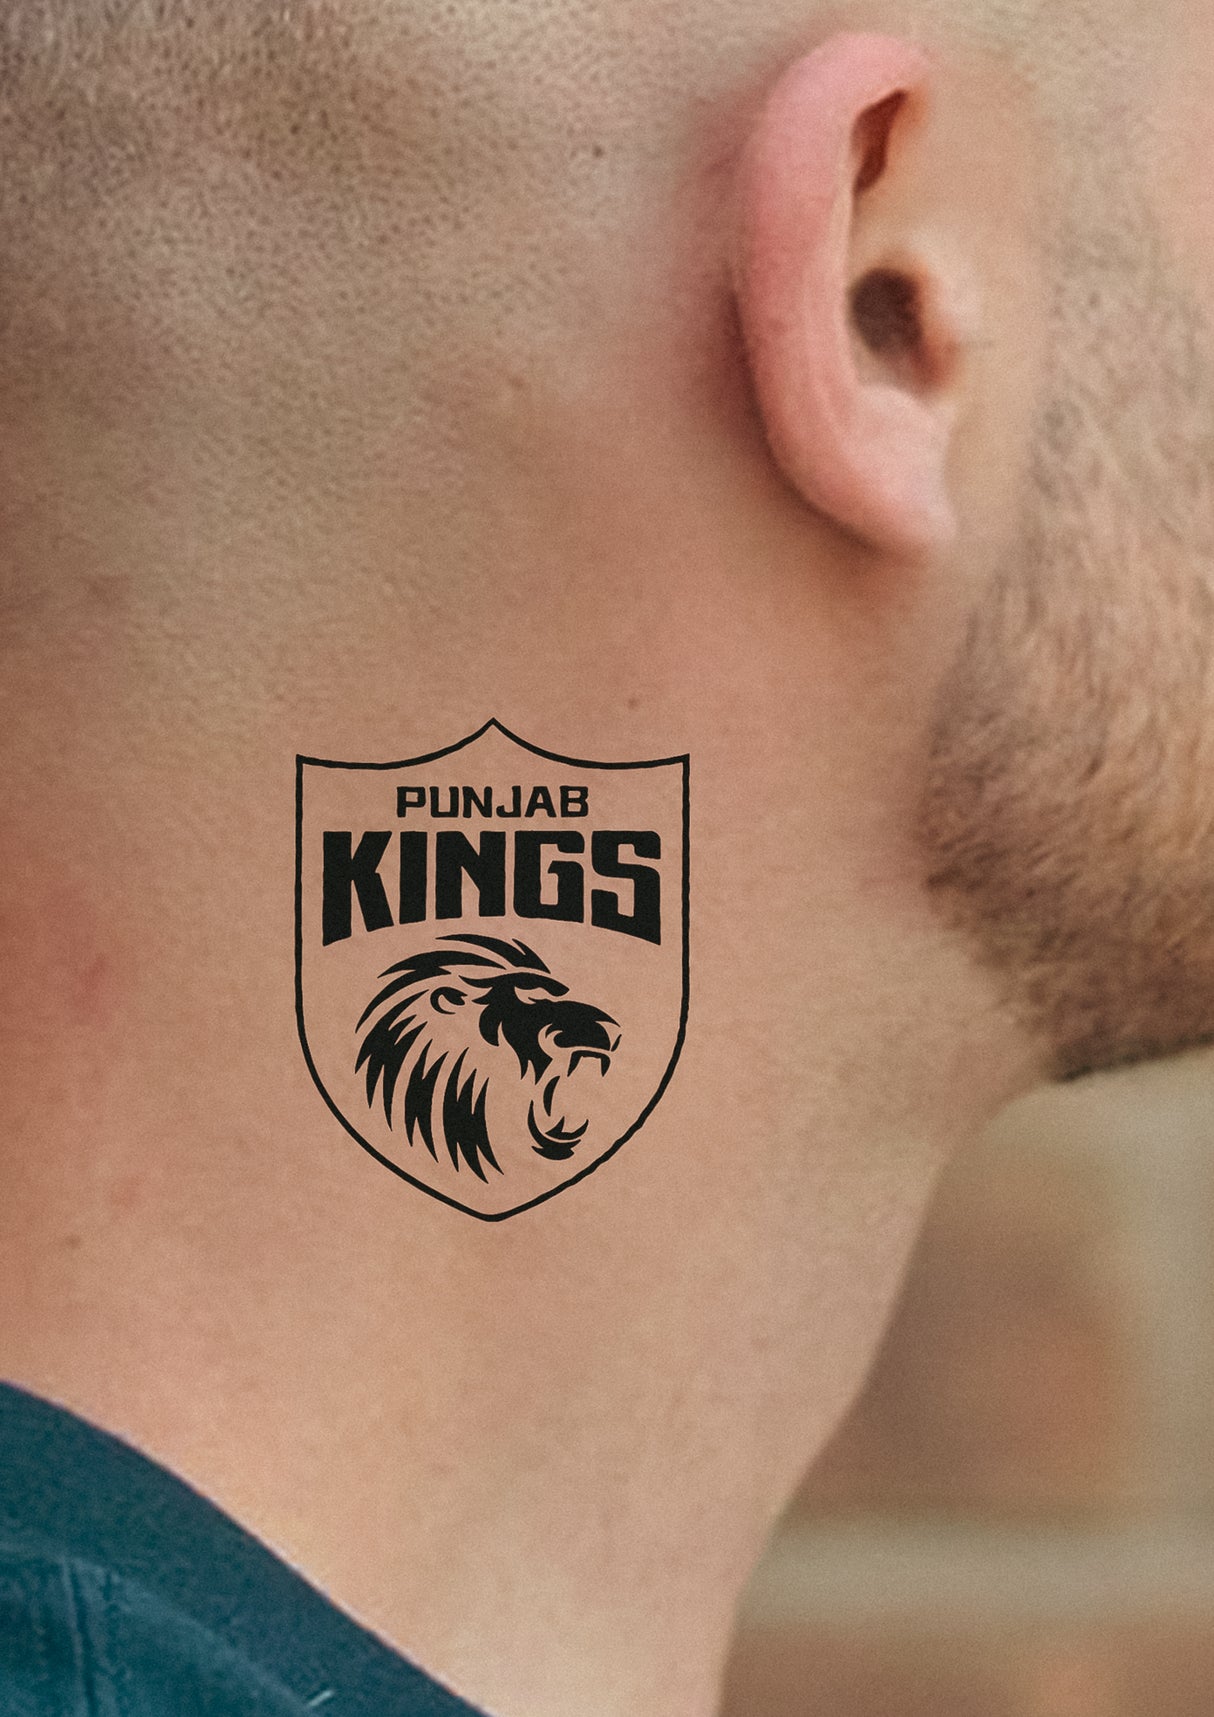 Punjab Kings - IPL Semi Permanent Tattoo